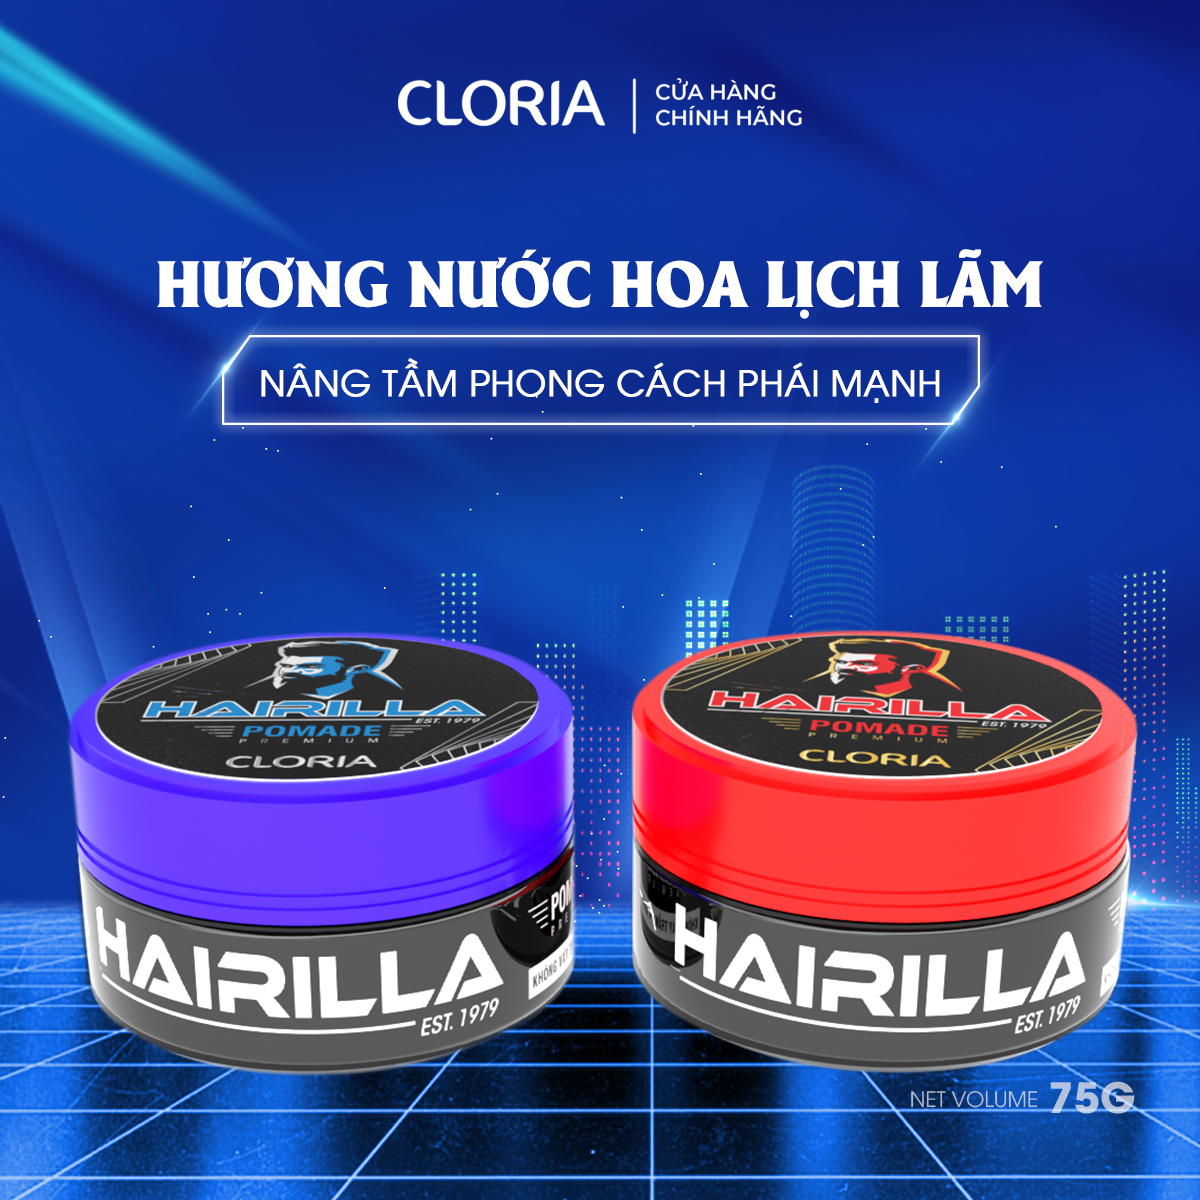 Pomade tạo nếp tóc Hairilla Cloria (75g) - Bảo Hành 100%